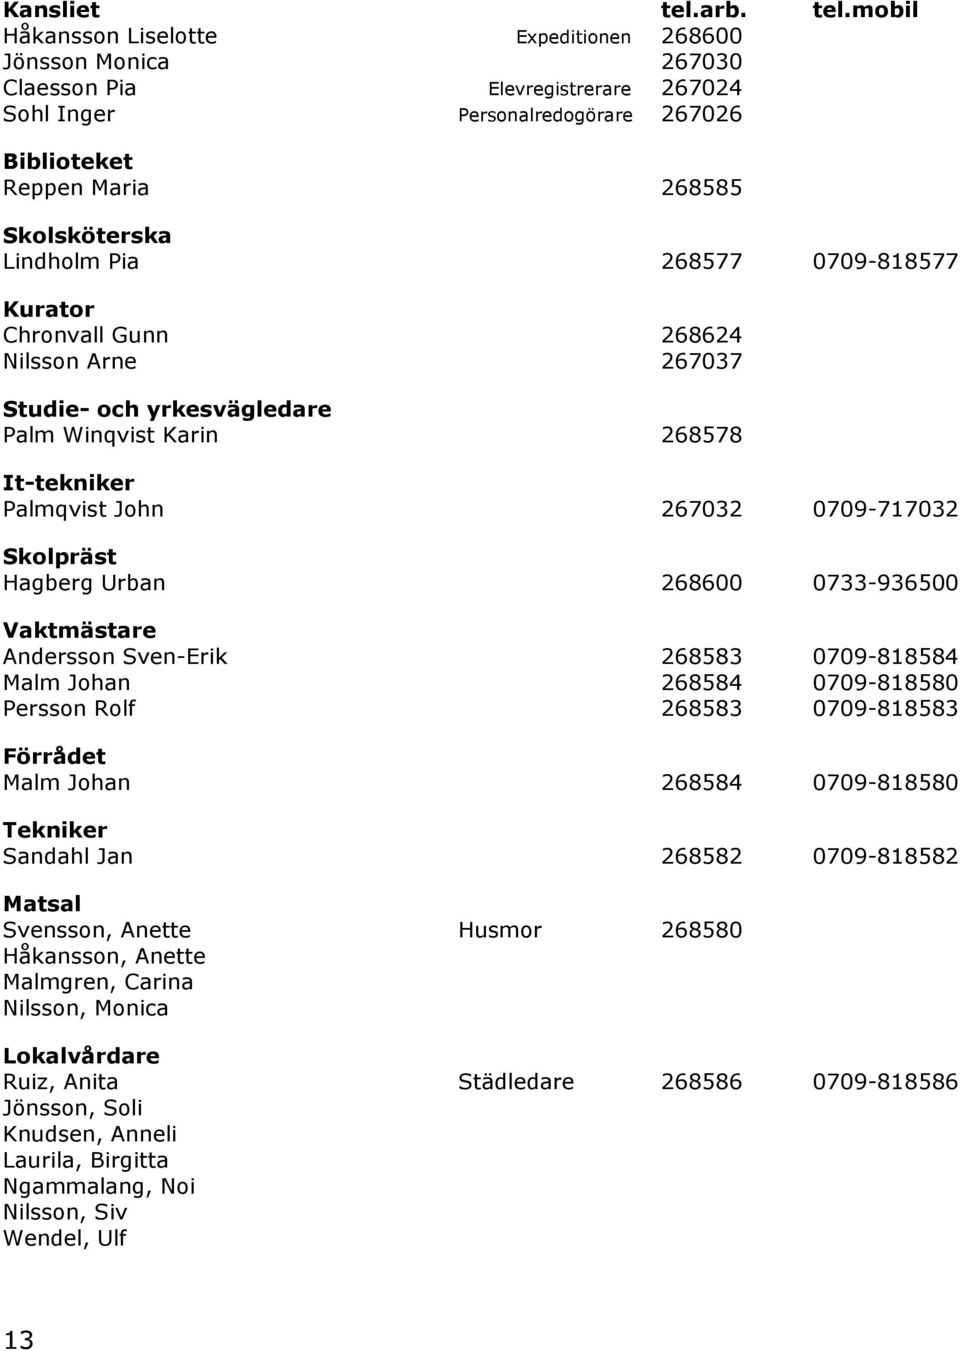 mobil Håkansson Liselotte Expeditionen 268600 Jönsson Monica 267030 Claesson Pia Elevregistrerare 267024 Sohl Inger Personalredogörare 267026 Biblioteket Reppen Maria 268585 Skolsköterska Lindholm